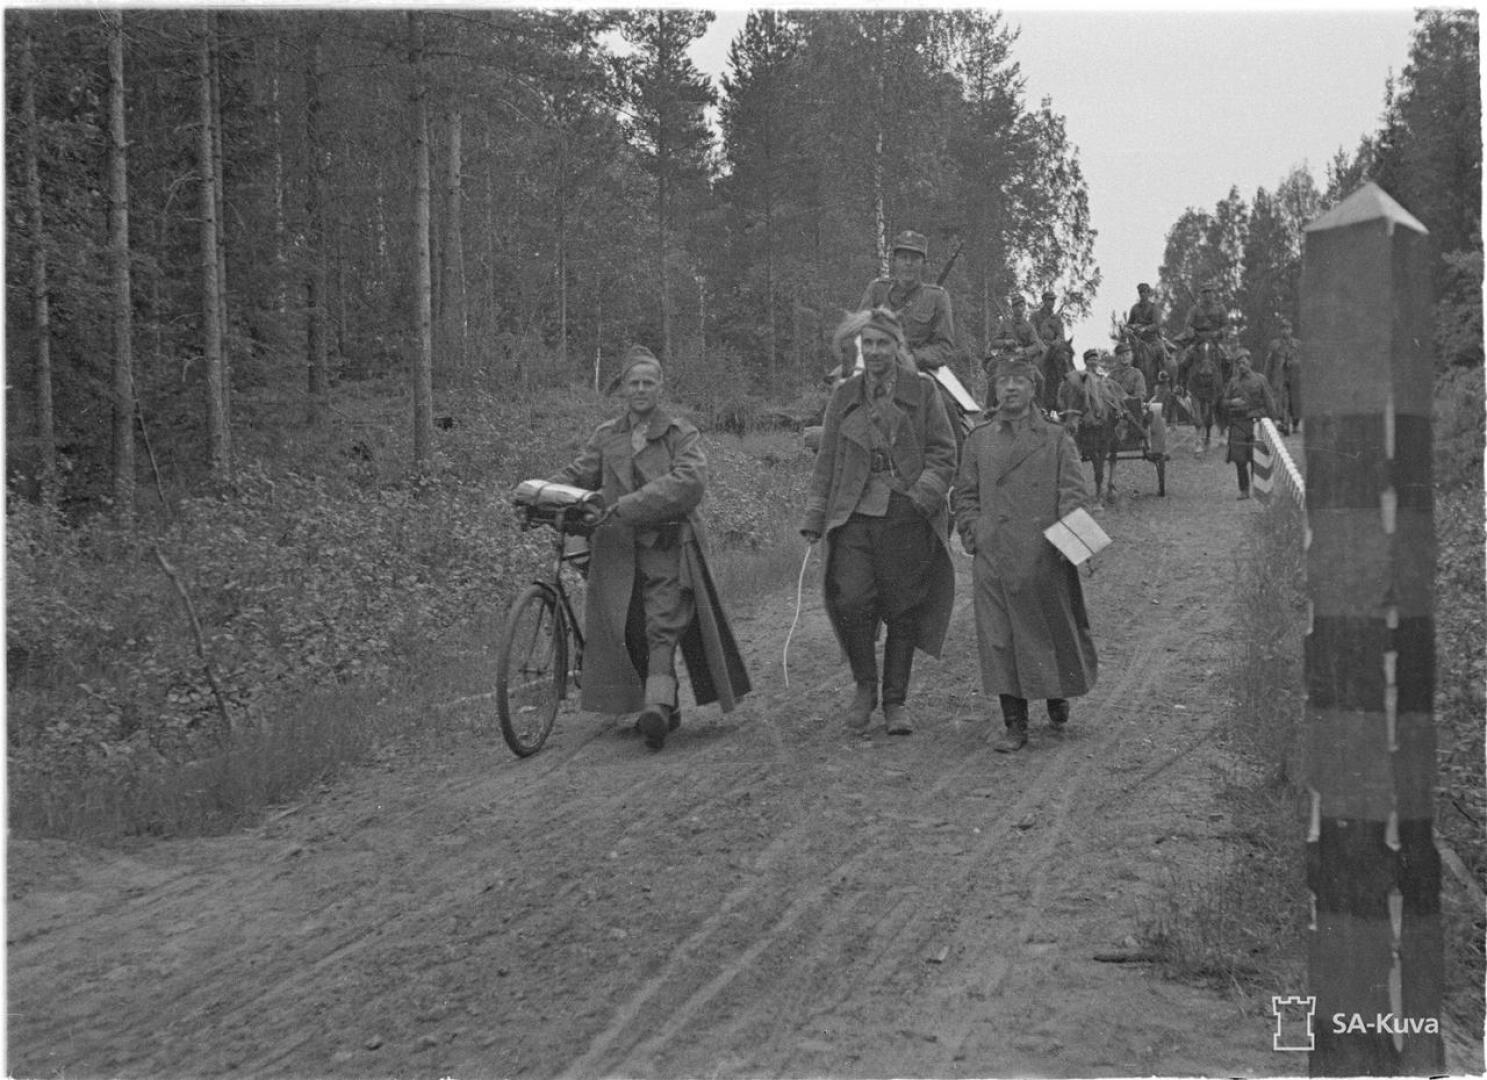 Everstiluutnantti Susitaipaleen esikunta marssi valtakunnan rajan yli Värtsilän Ilomäessä heinäkuun alussa 1941.